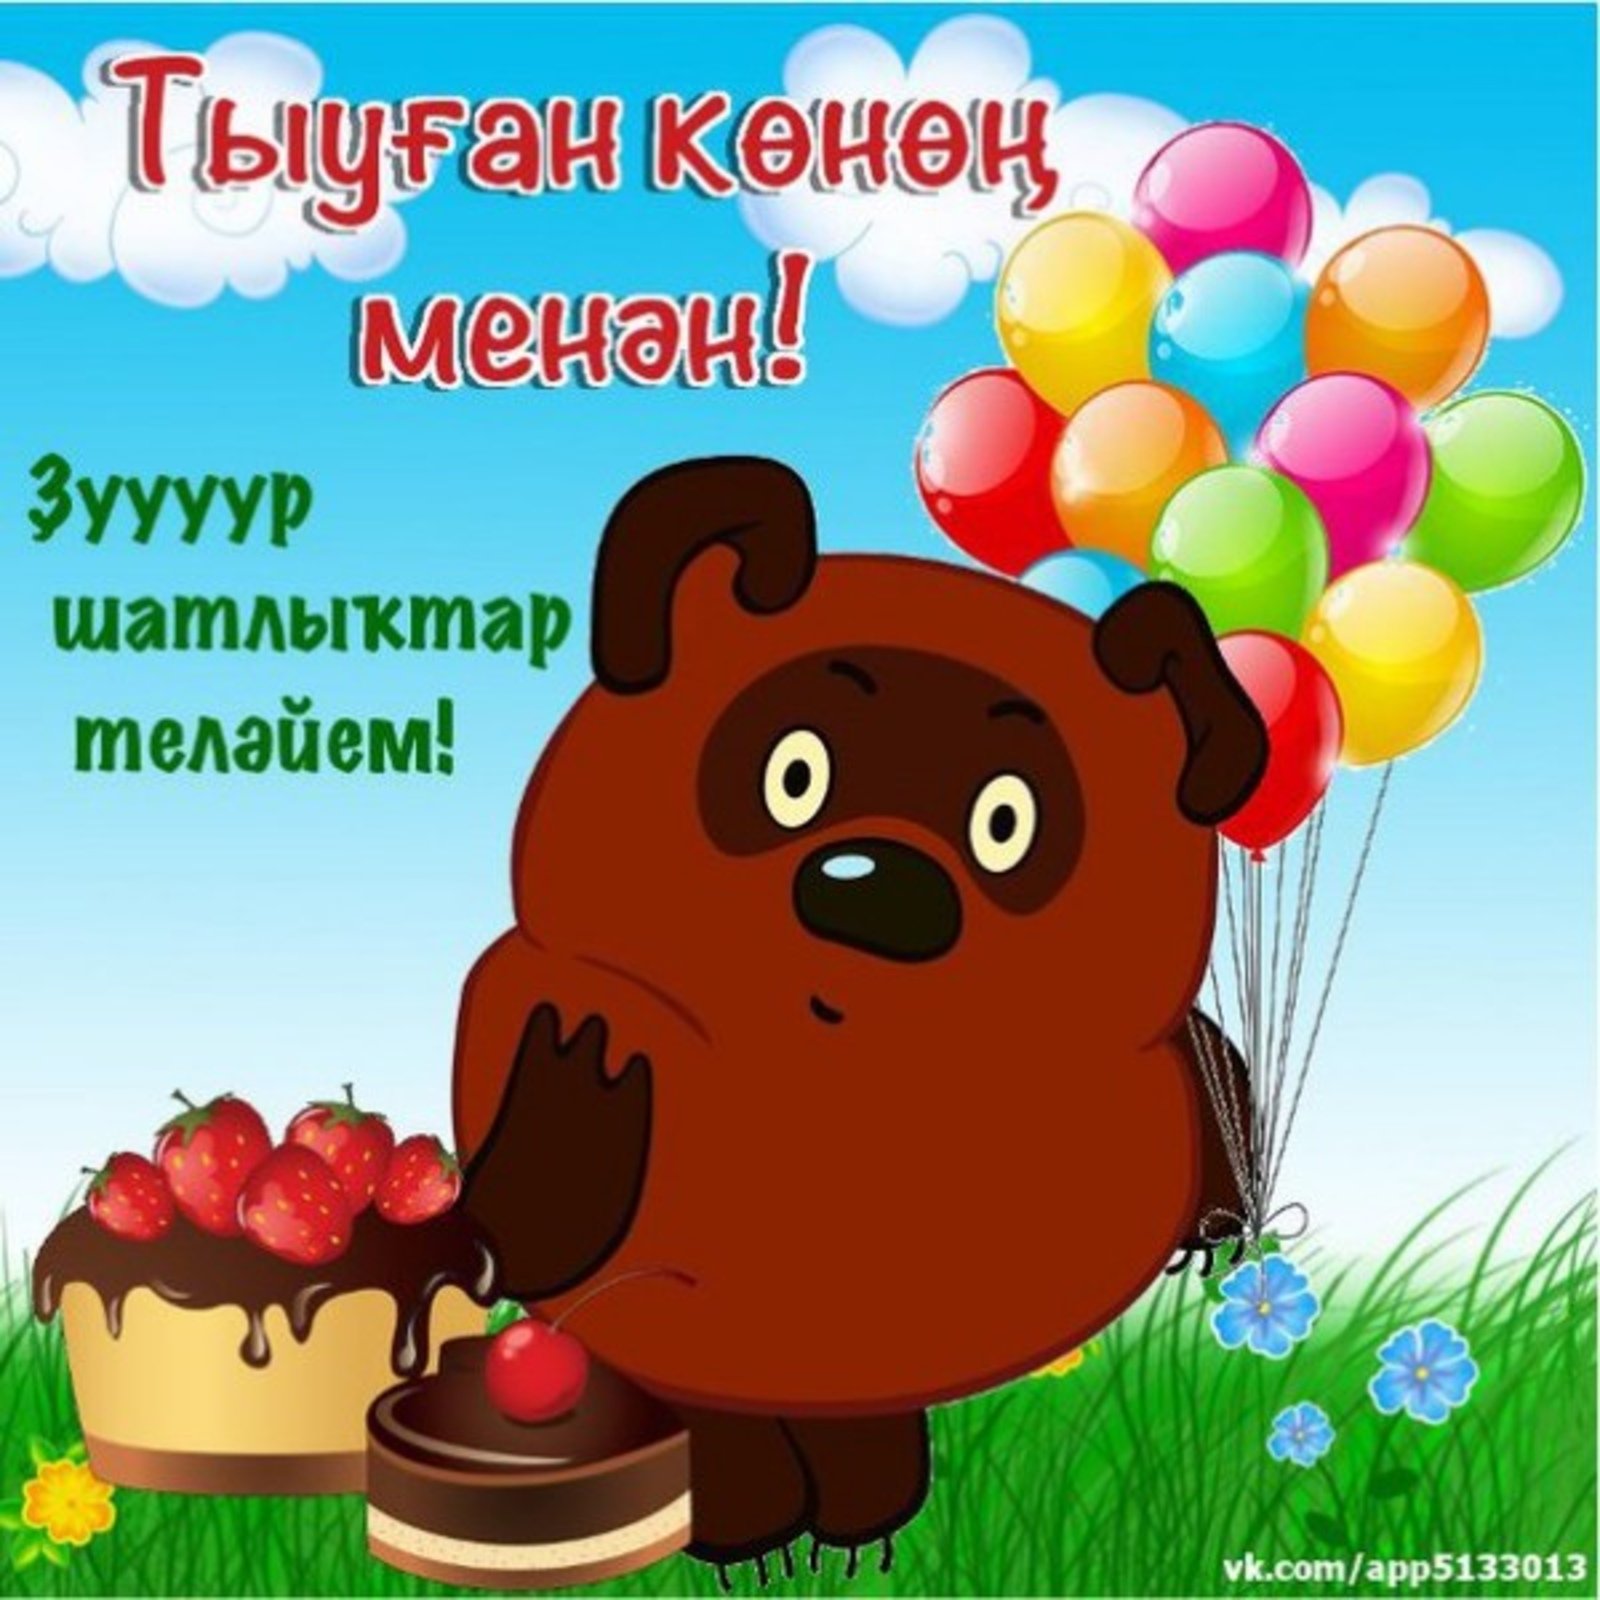 Татарский поздравление с днем рождения брата. Поздравления с днём рождения на башкирском языке. Башкирские пожелания на день рождения. Поздравления с днём рождения мужчине на башкирском языке. Поздравление с юбилеем на башкирском языке.